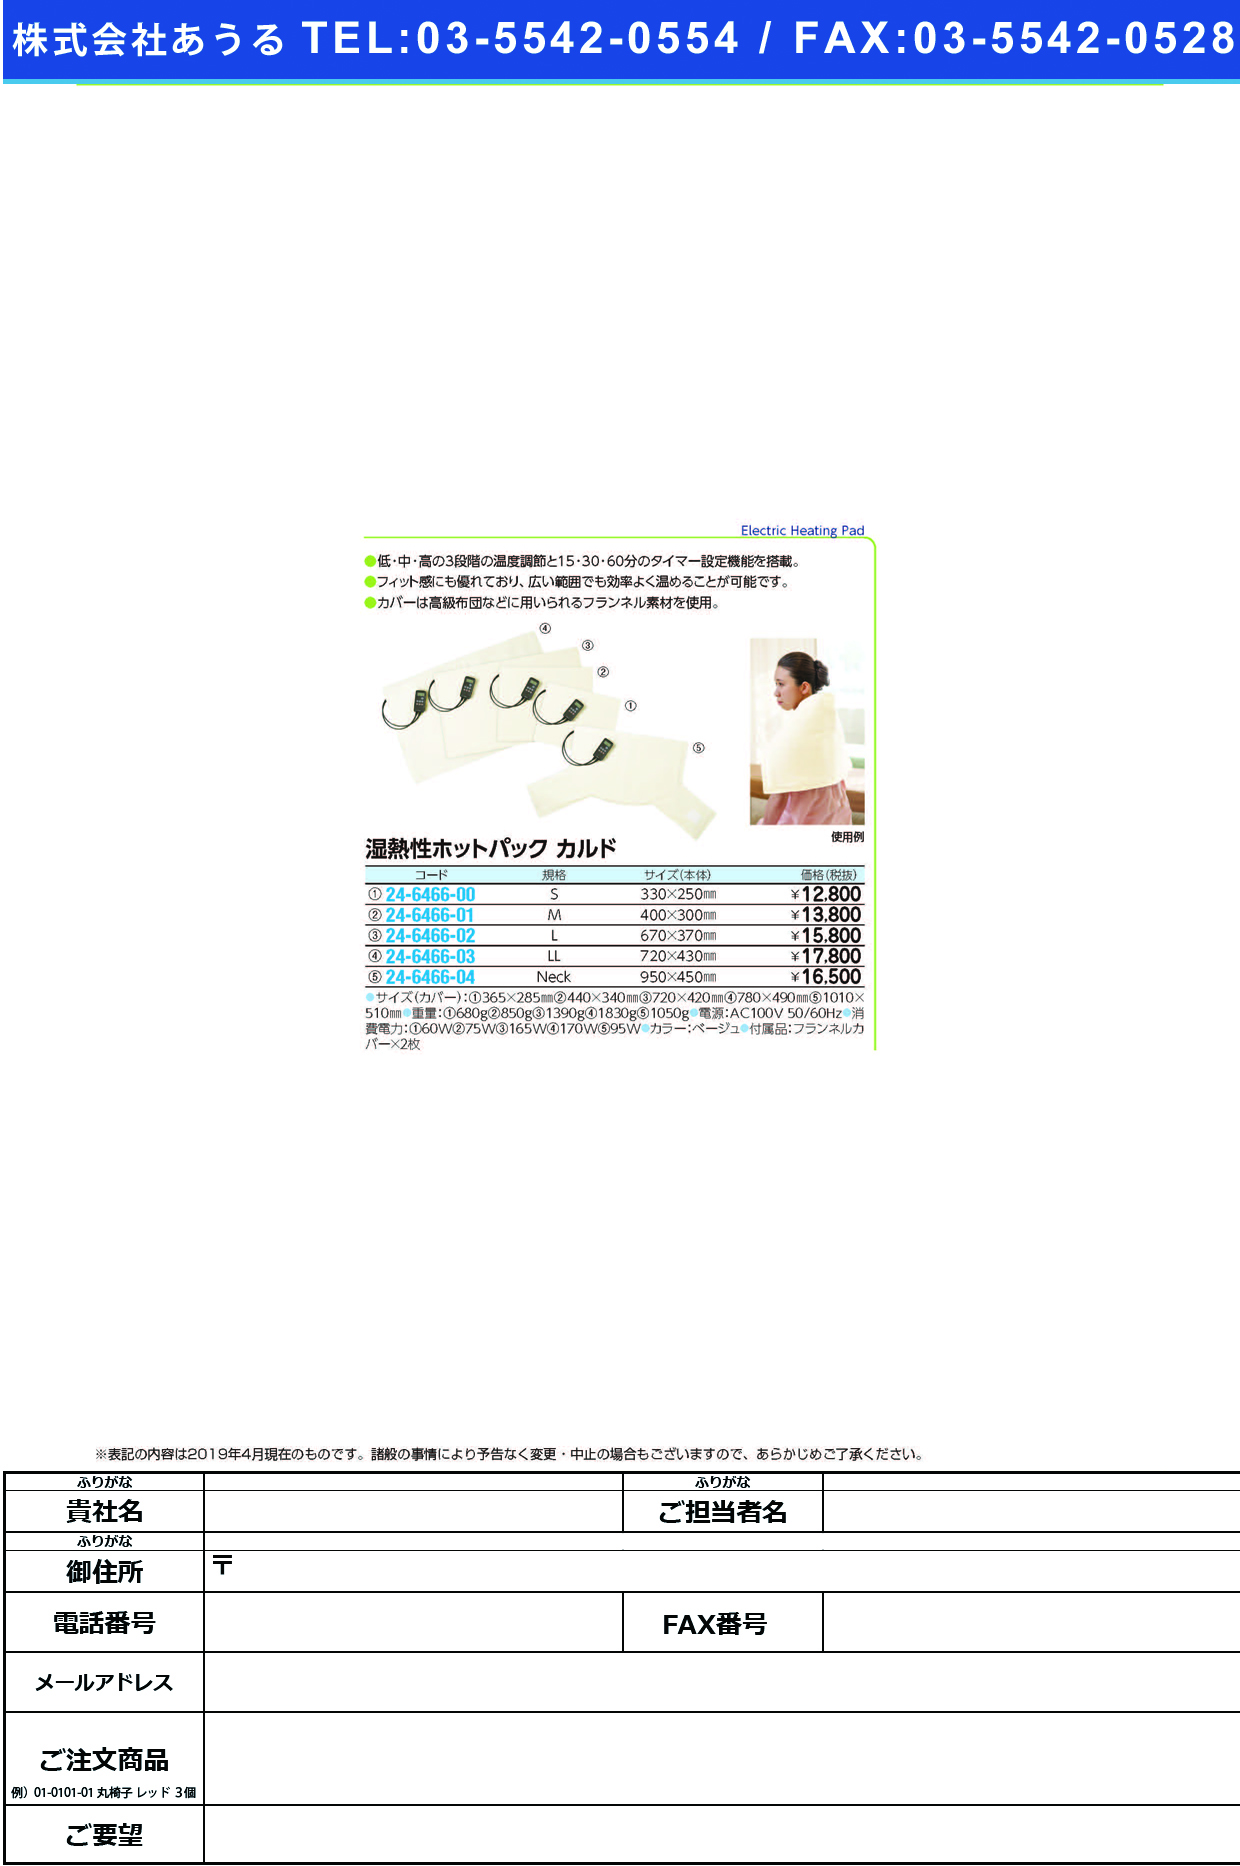 (24-6466-01)湿熱性ホットパックカルド 000-0653(M)ﾍﾞｰｼﾞｭ ｼﾂﾈﾂｾｲﾎｯﾄﾊﾟｯｸｶﾙﾄﾞ【1台単位】【2019年カタログ商品】